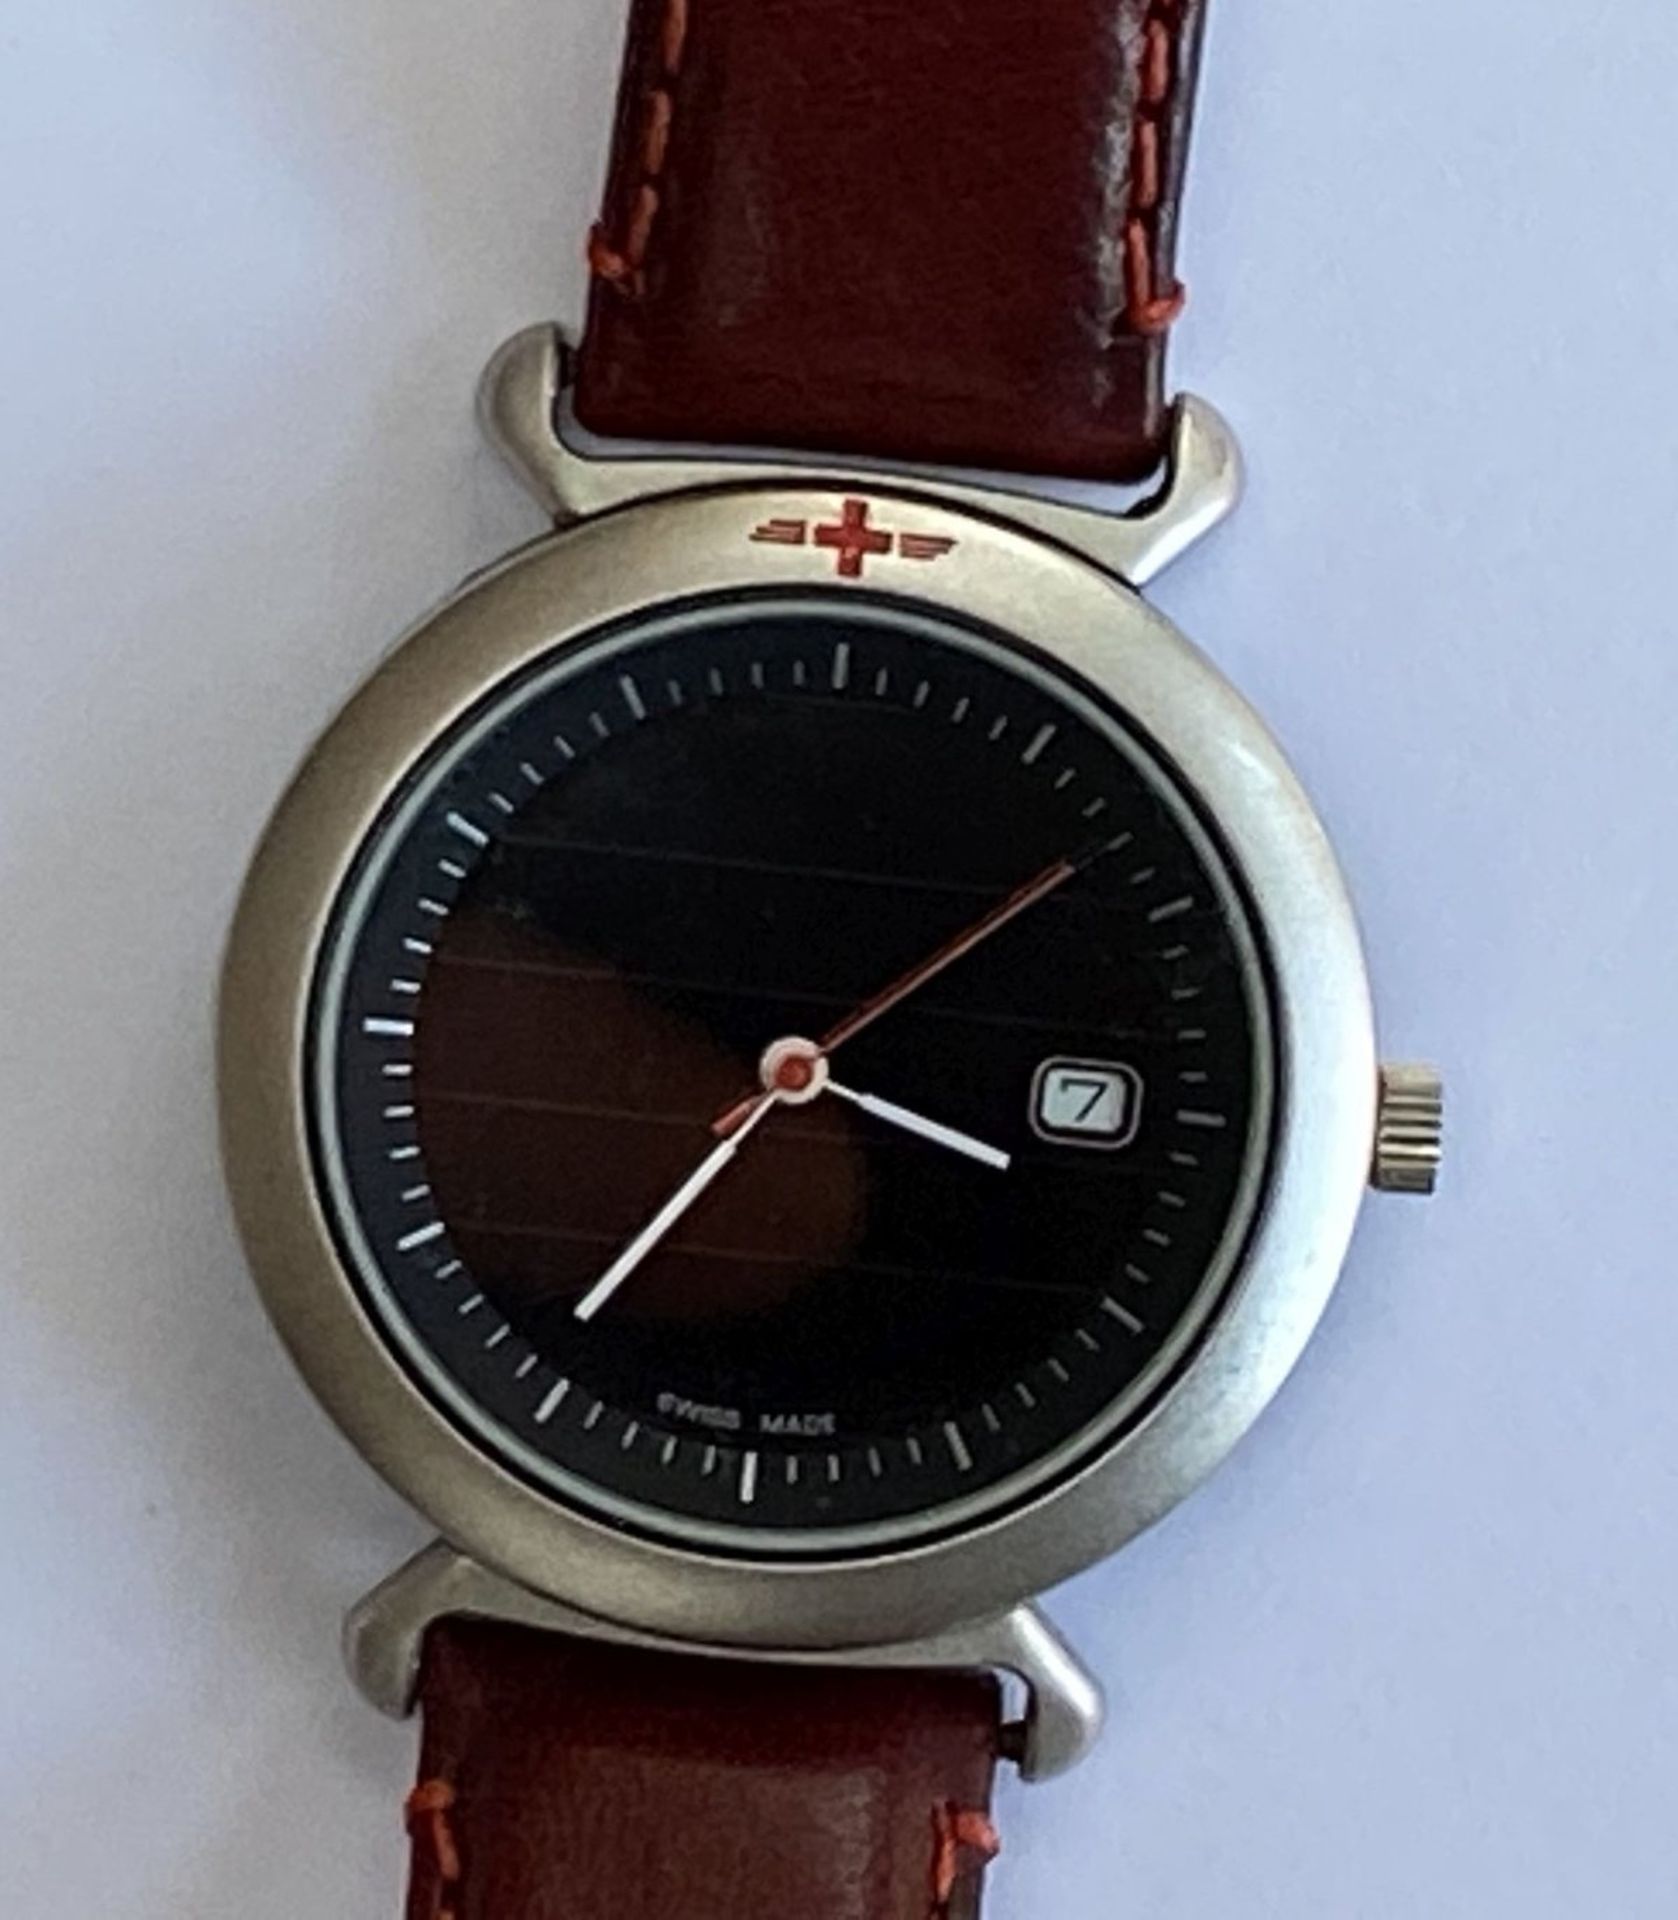 Schweizer Armbanduhr, Quarz, kein Hersteller?, nur Schweizer Kreuz, Werk läuft, gut erhalten,